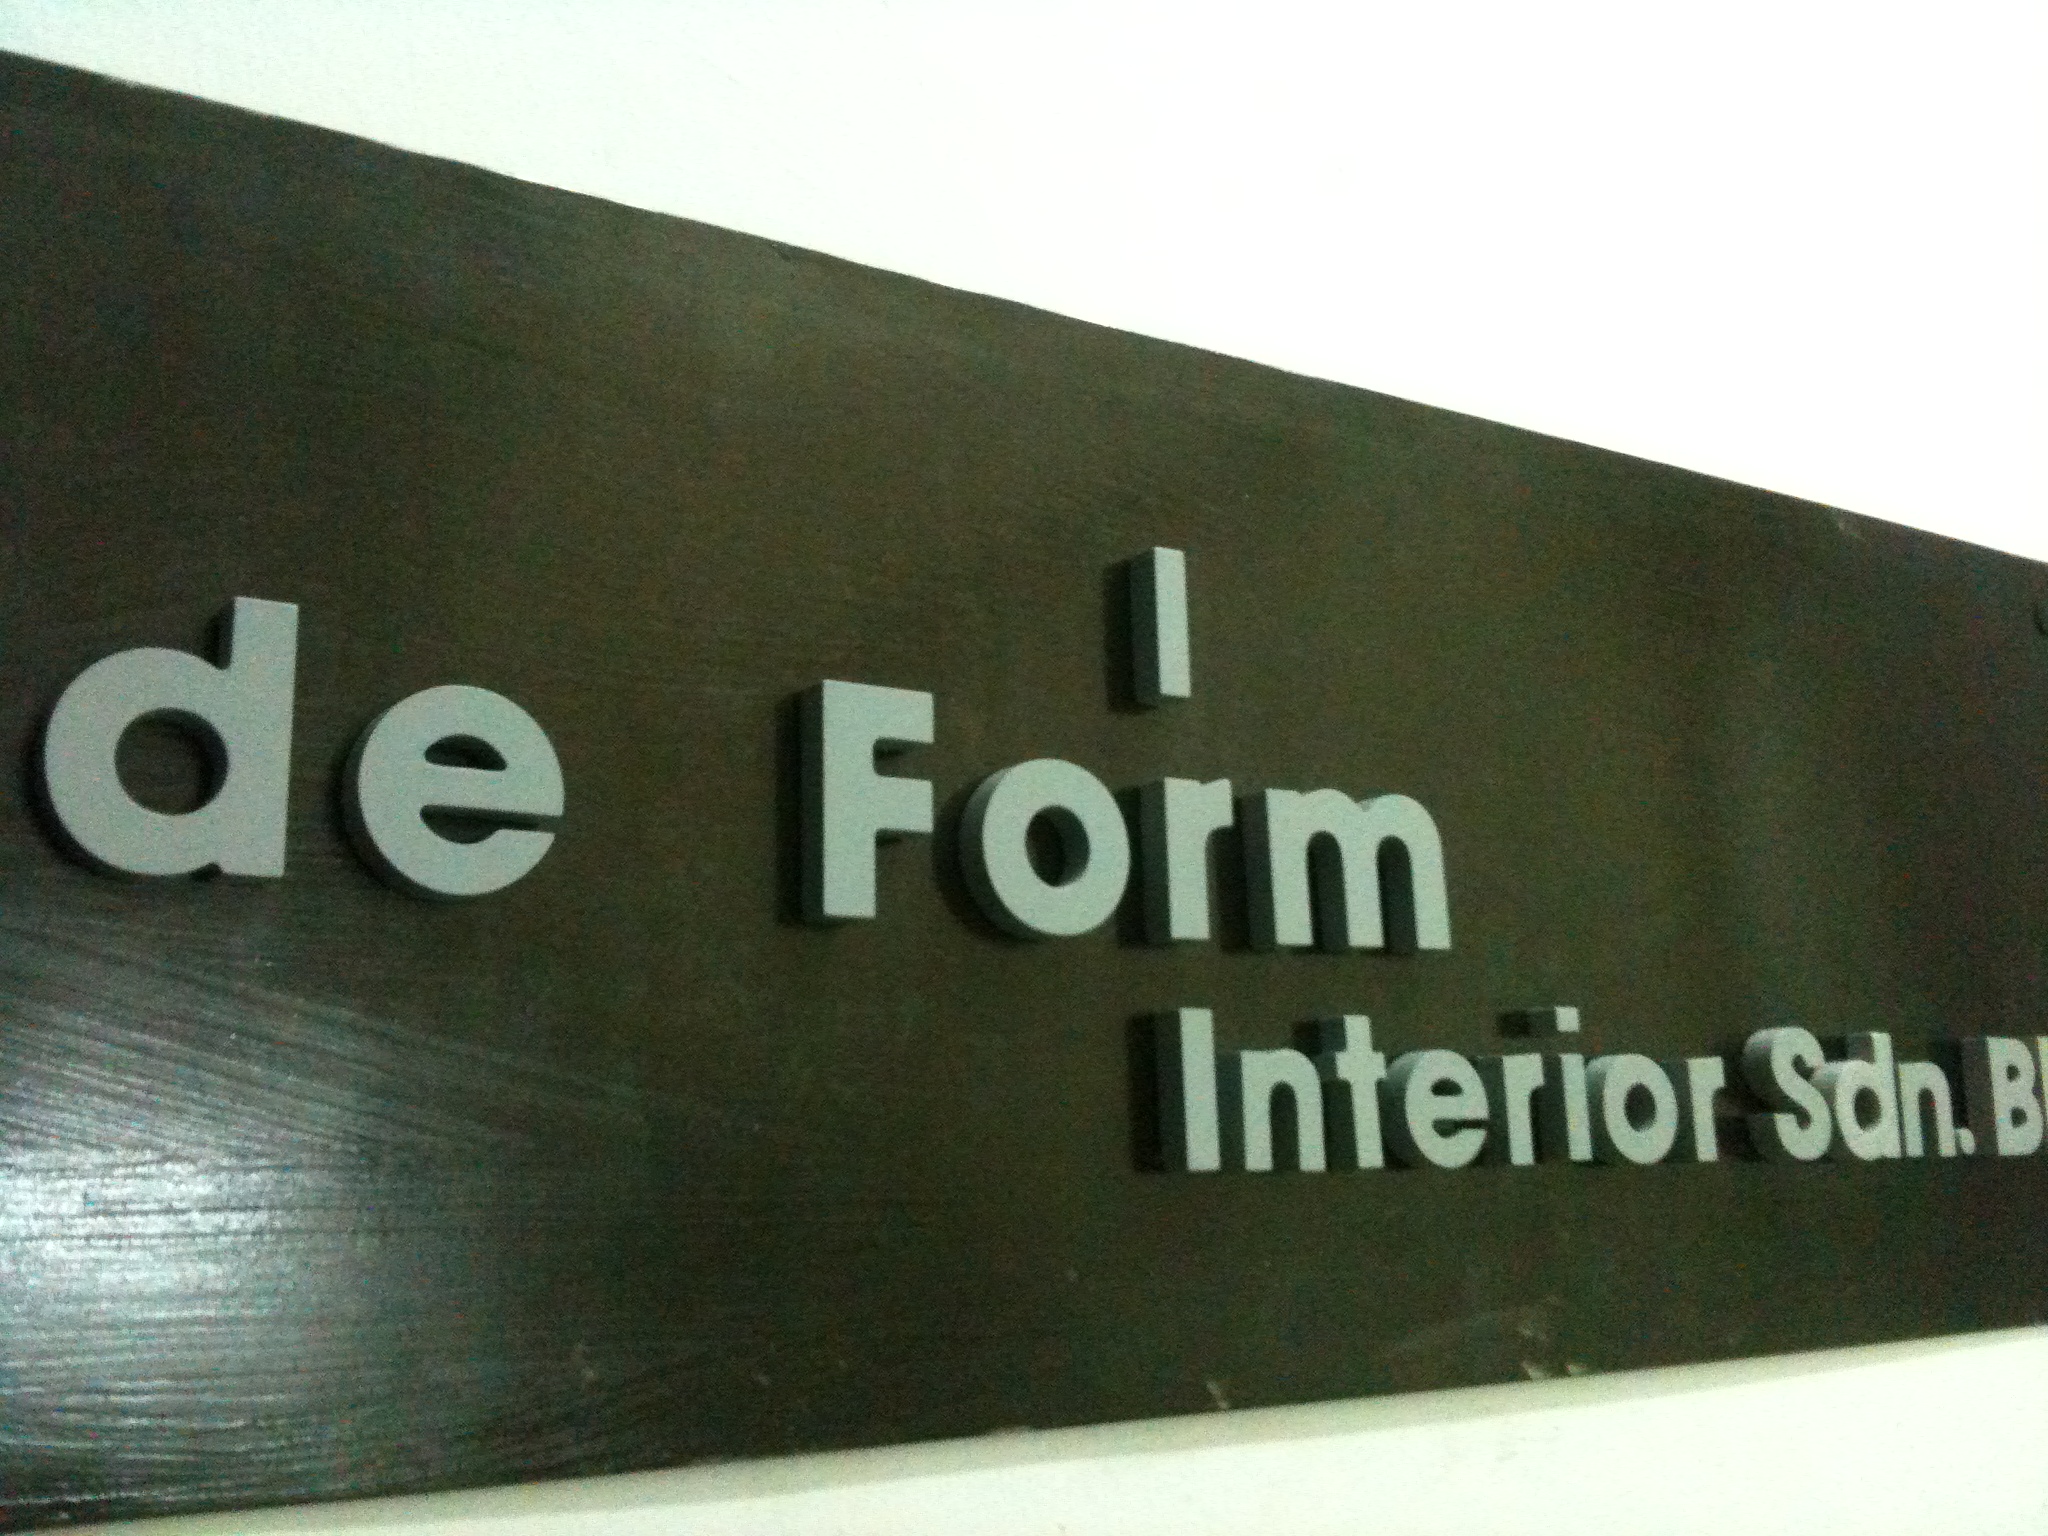 De Form Interior Sdn Bhd